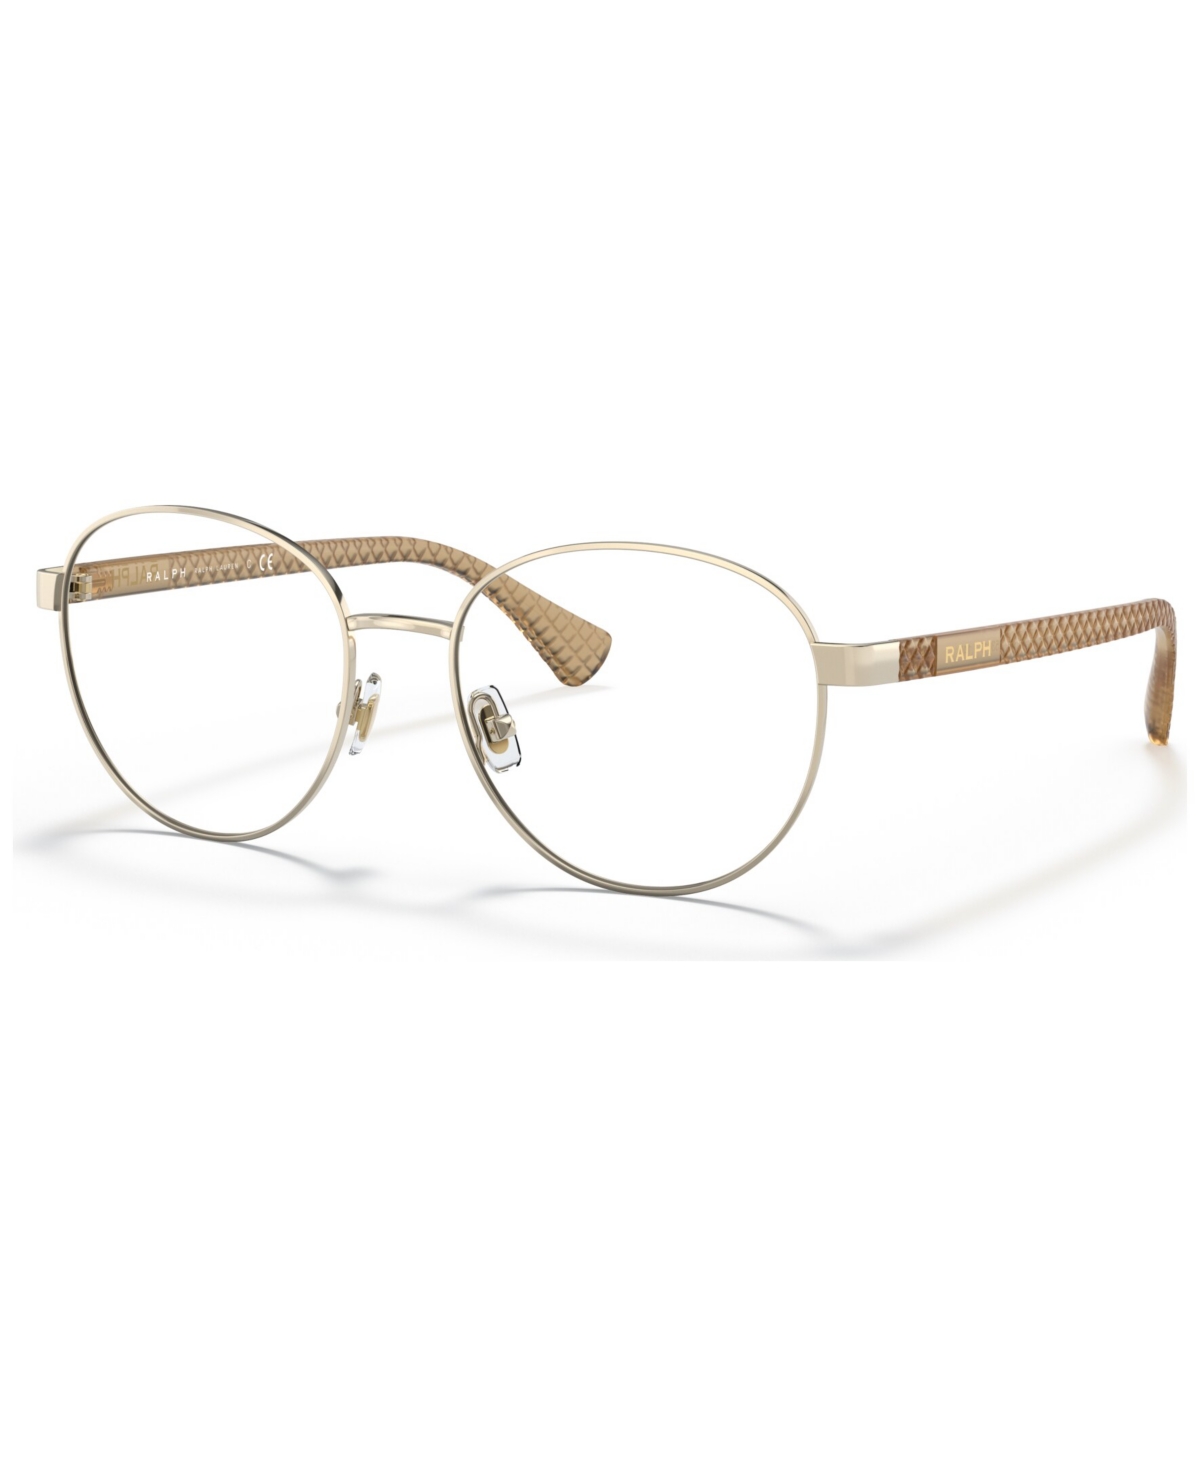 Women's Round Eyeglasses RA6050 - Shiny Rose Gold-Tone